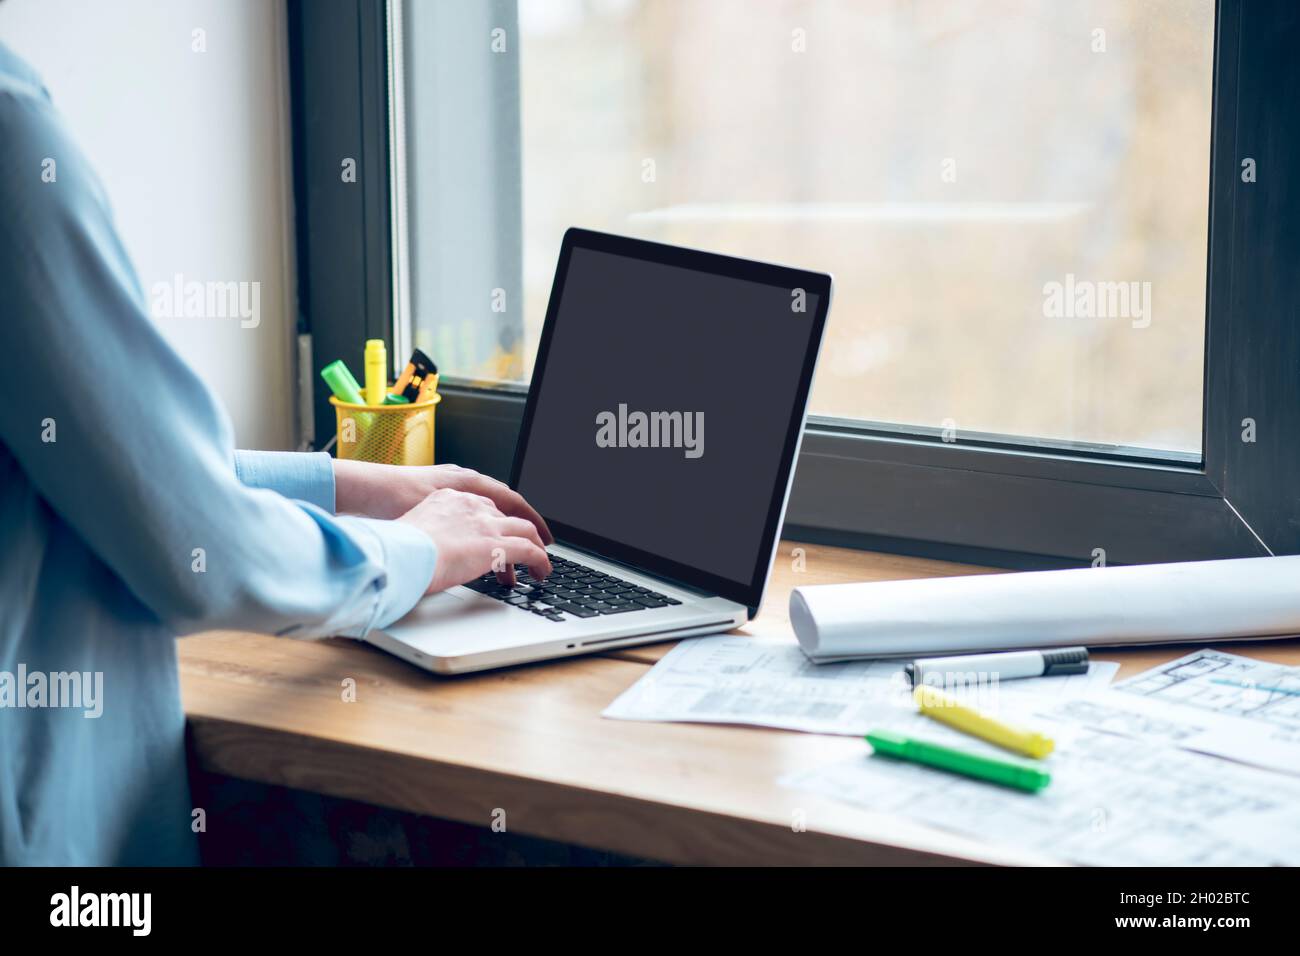 Les mains des femmes près du clavier de l'ordinateur portable sur le rebord de la fenêtre Banque D'Images